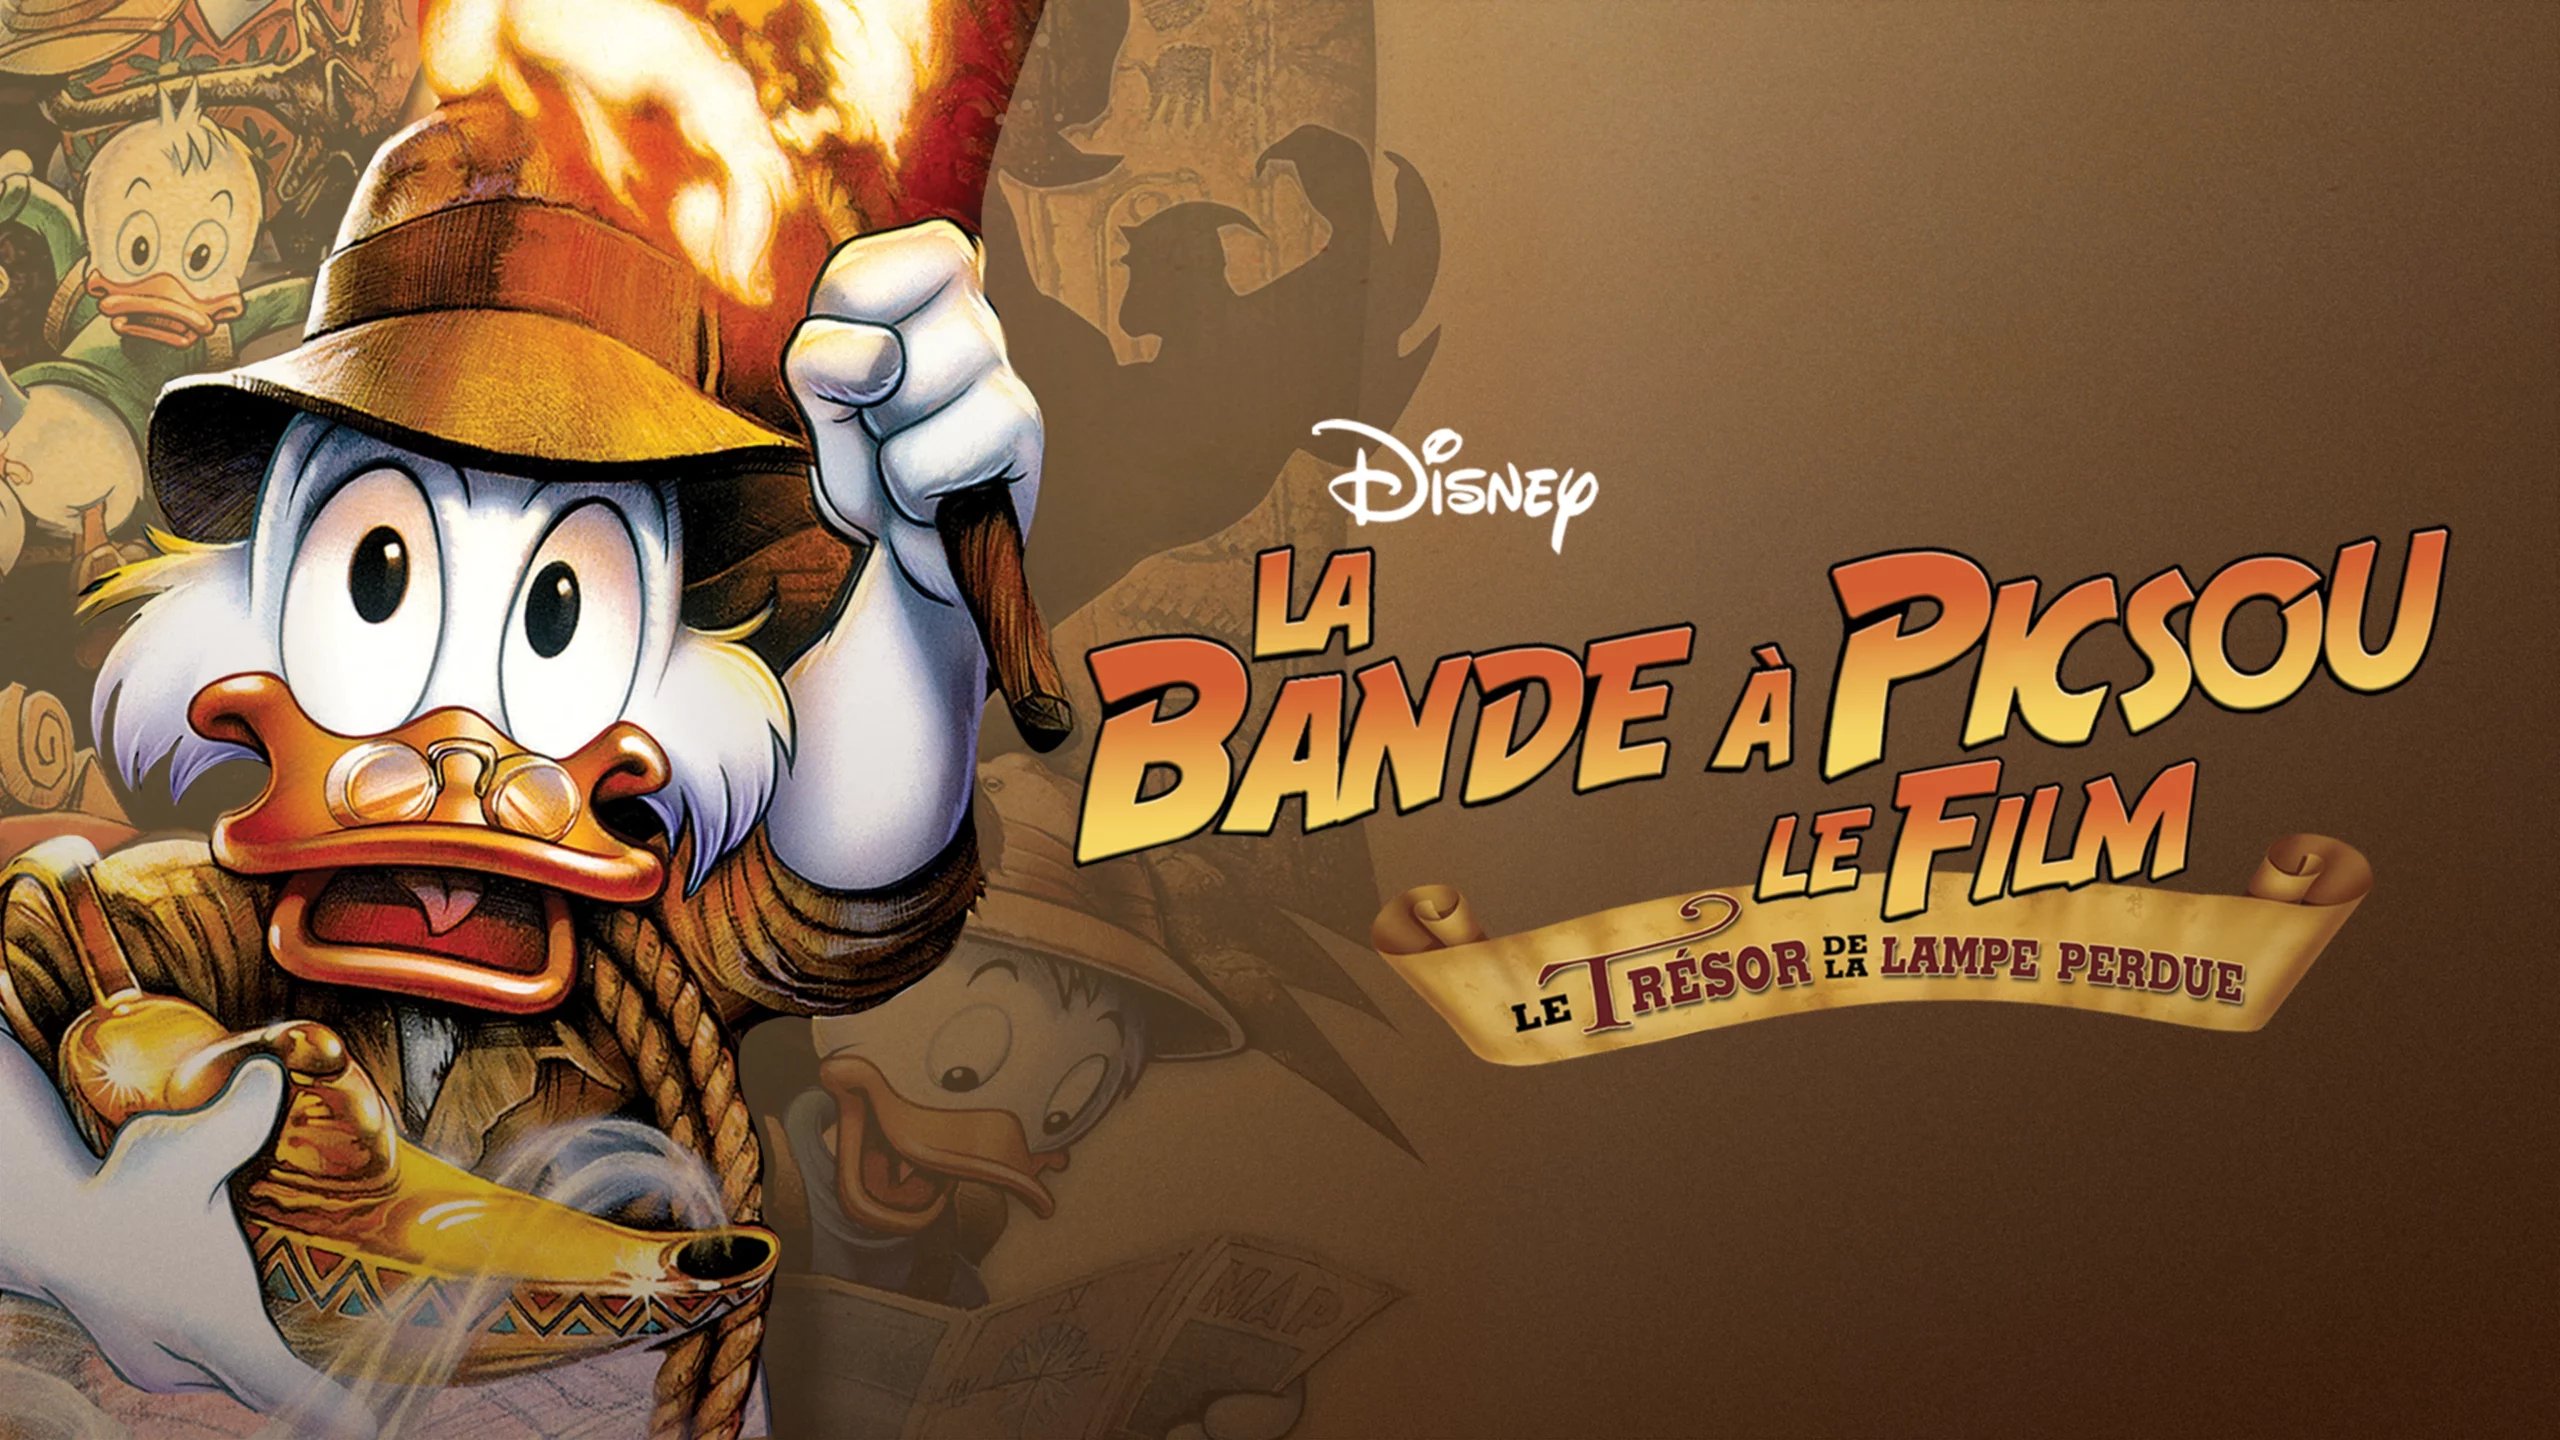 Image promotionnelle du film "La Bande à Picsou, le film : Le Trésor de la Lampe Perdue" mettant en scène le personnage de Disney Oncle Scrooge tenant une torche,